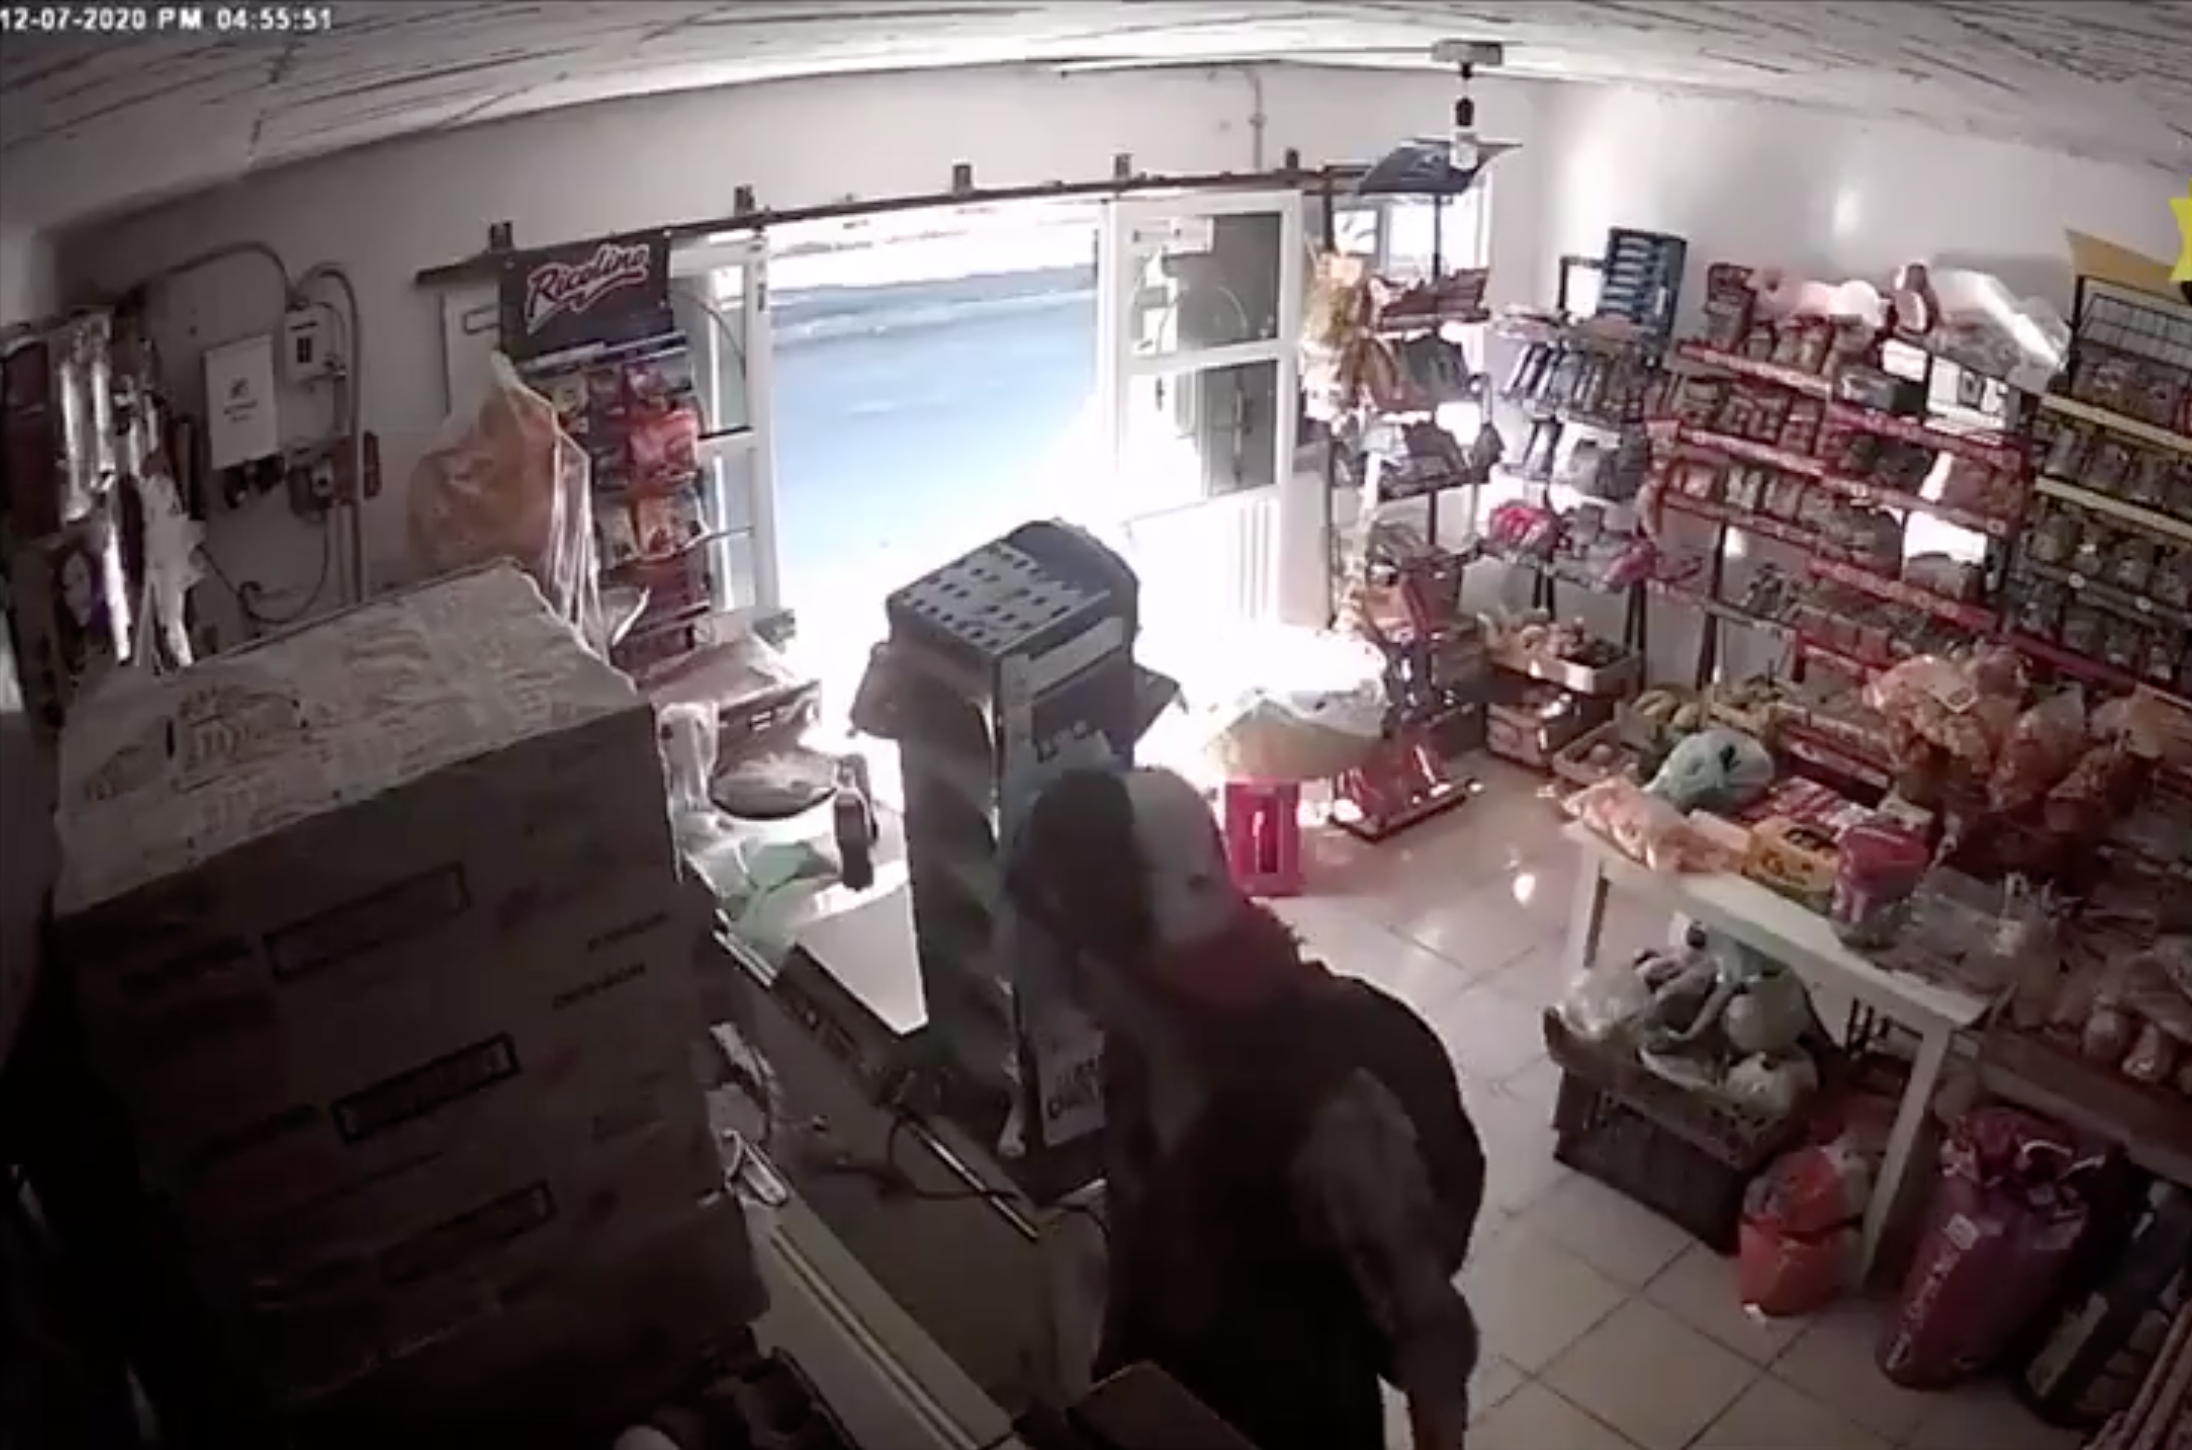 Qué valor: Mujer forcejea con delincuente armado para proteger su tienda 